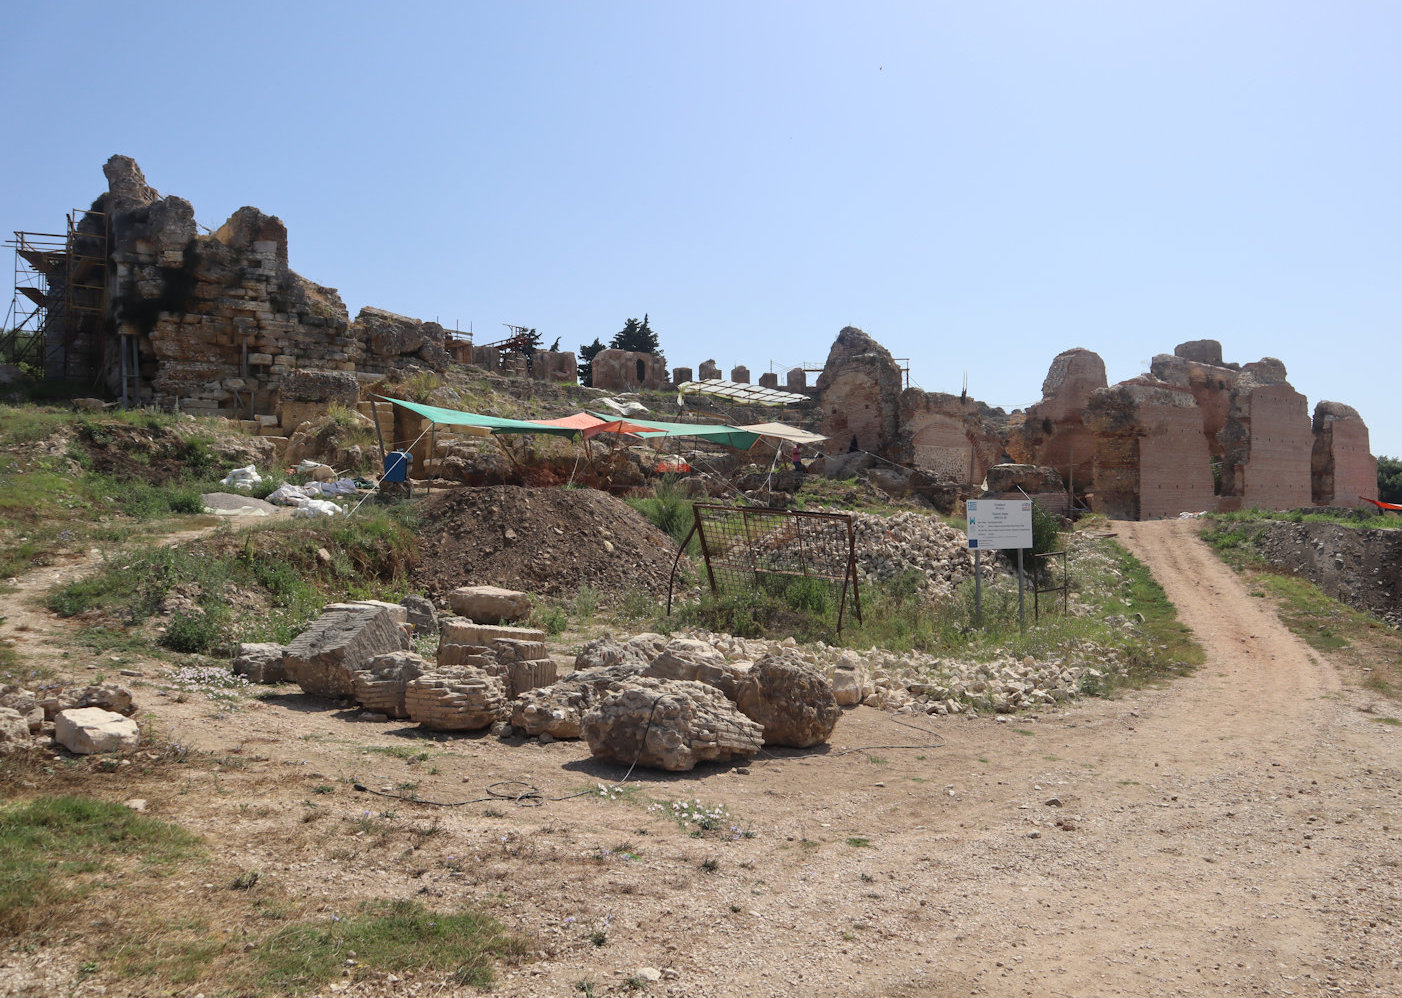 Amphitheater von Nikopolis, das derzeit (2019) restauriert und gesichert wird